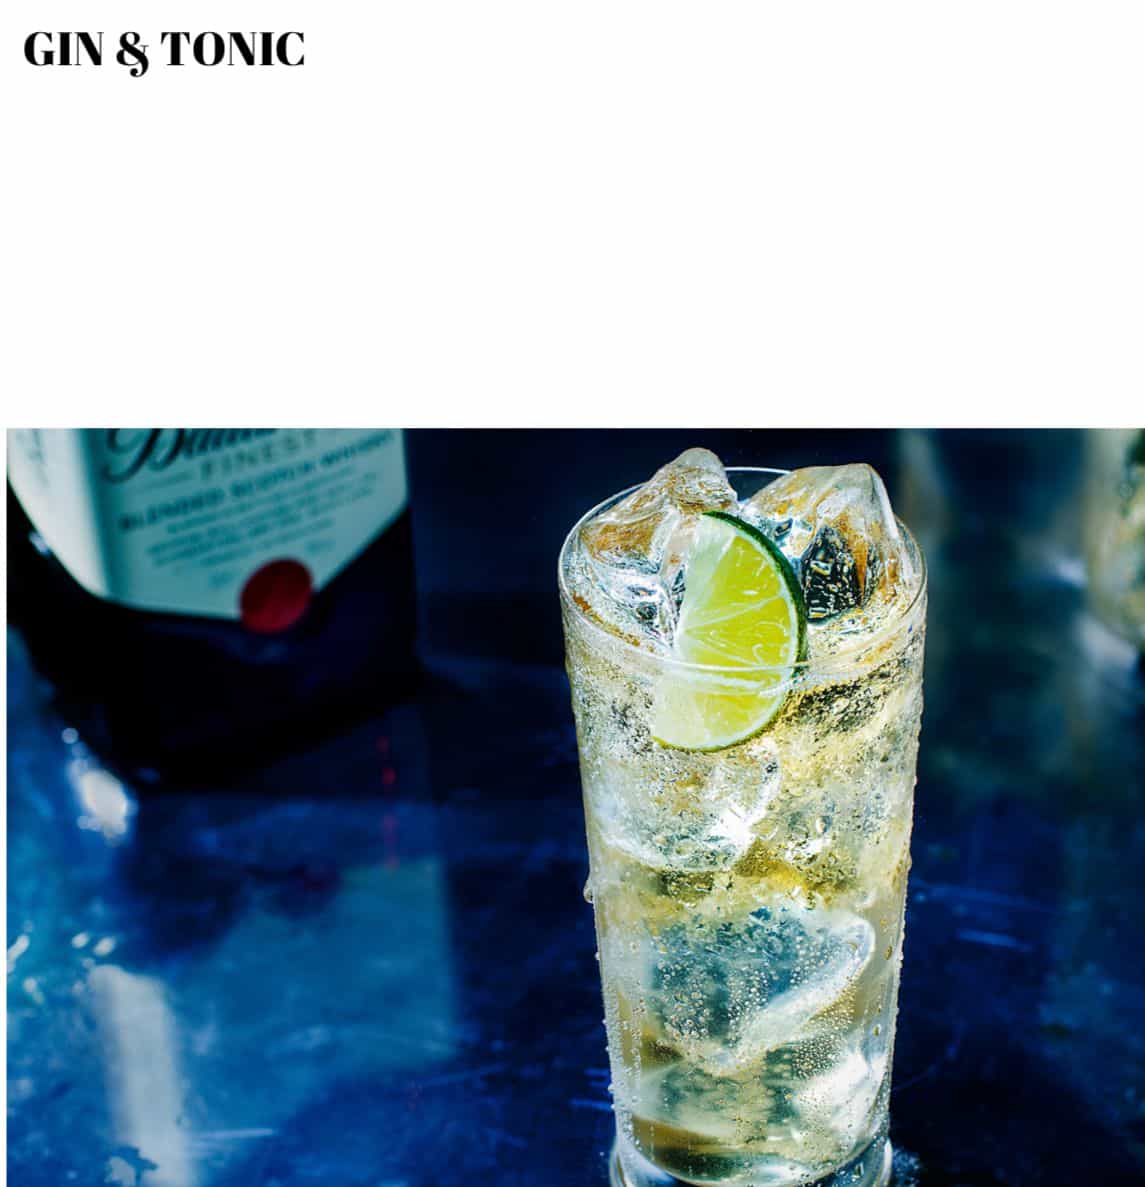 Gin & tonic gin & tonic gin & tonic gin & tonic g.